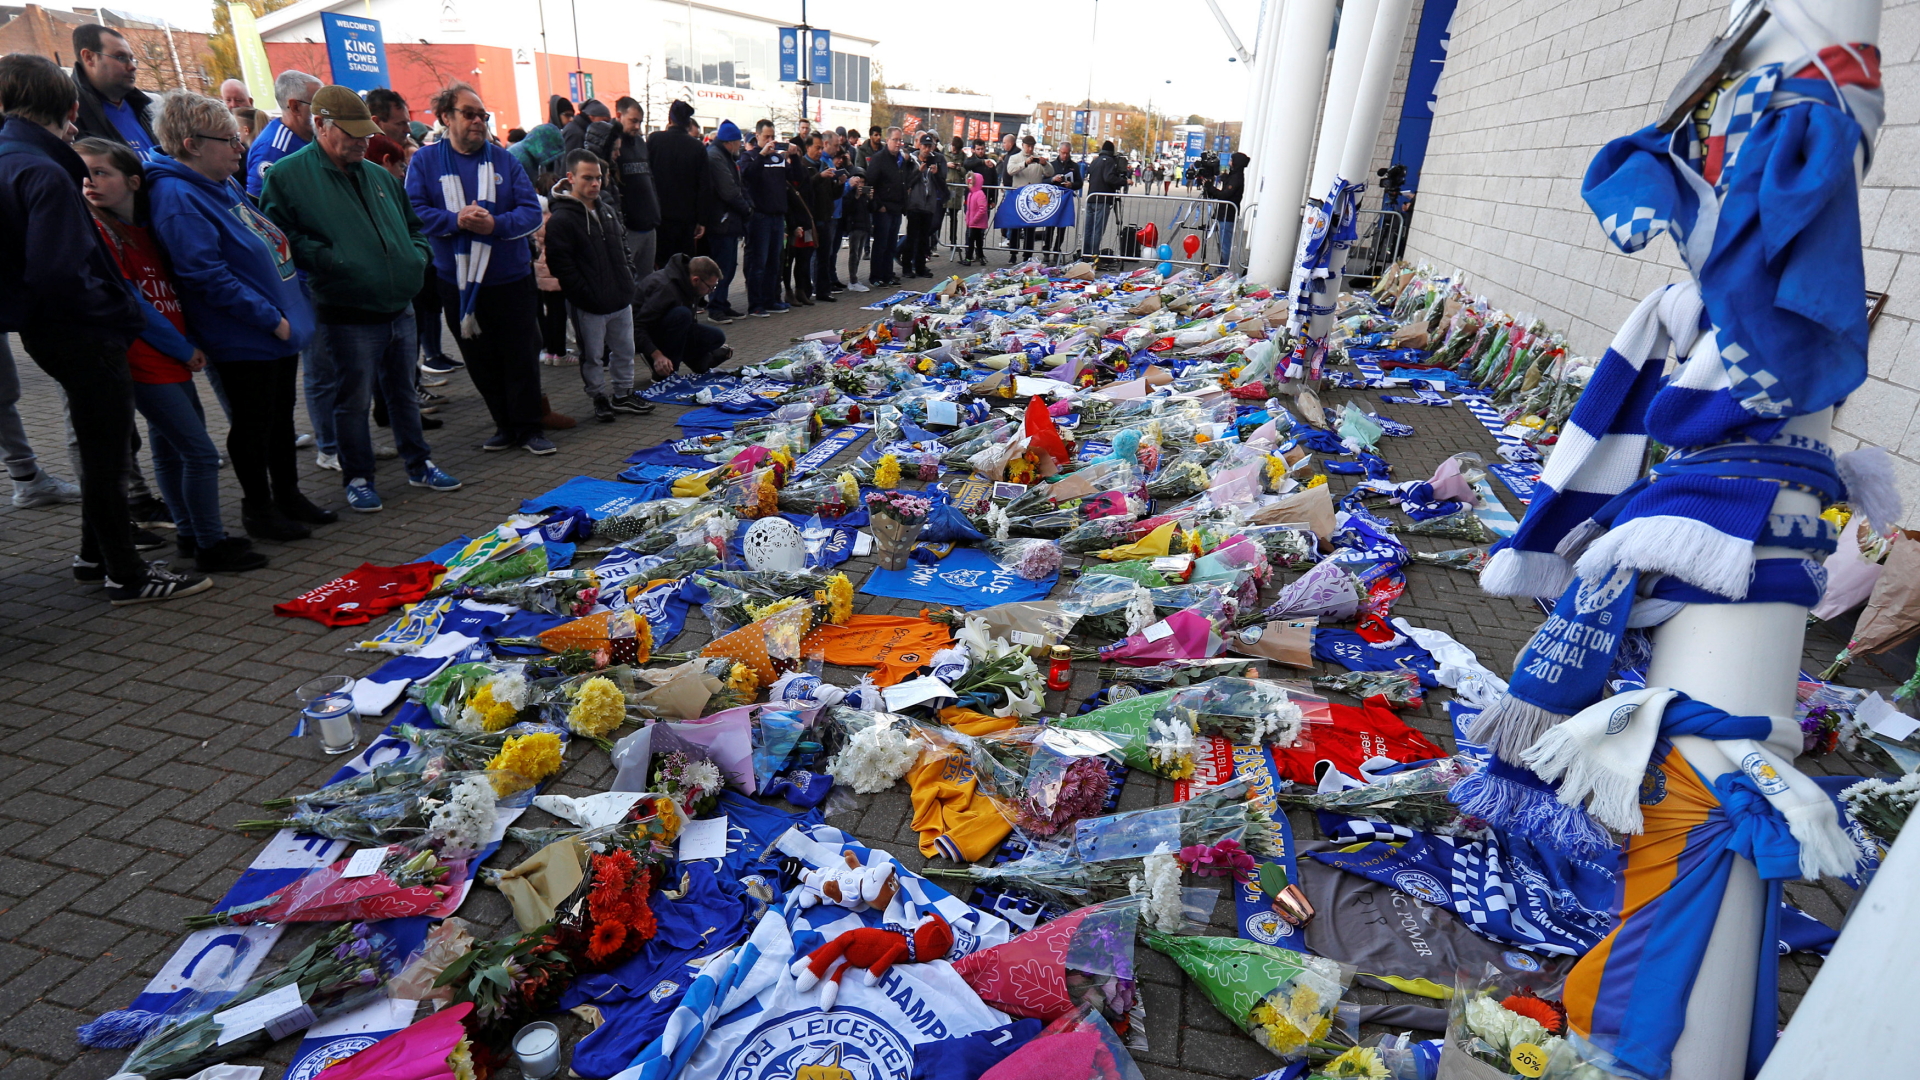 Leicester-Fans trauern nach dem Helikopter-Absturz | Bildquelle: REUTERS